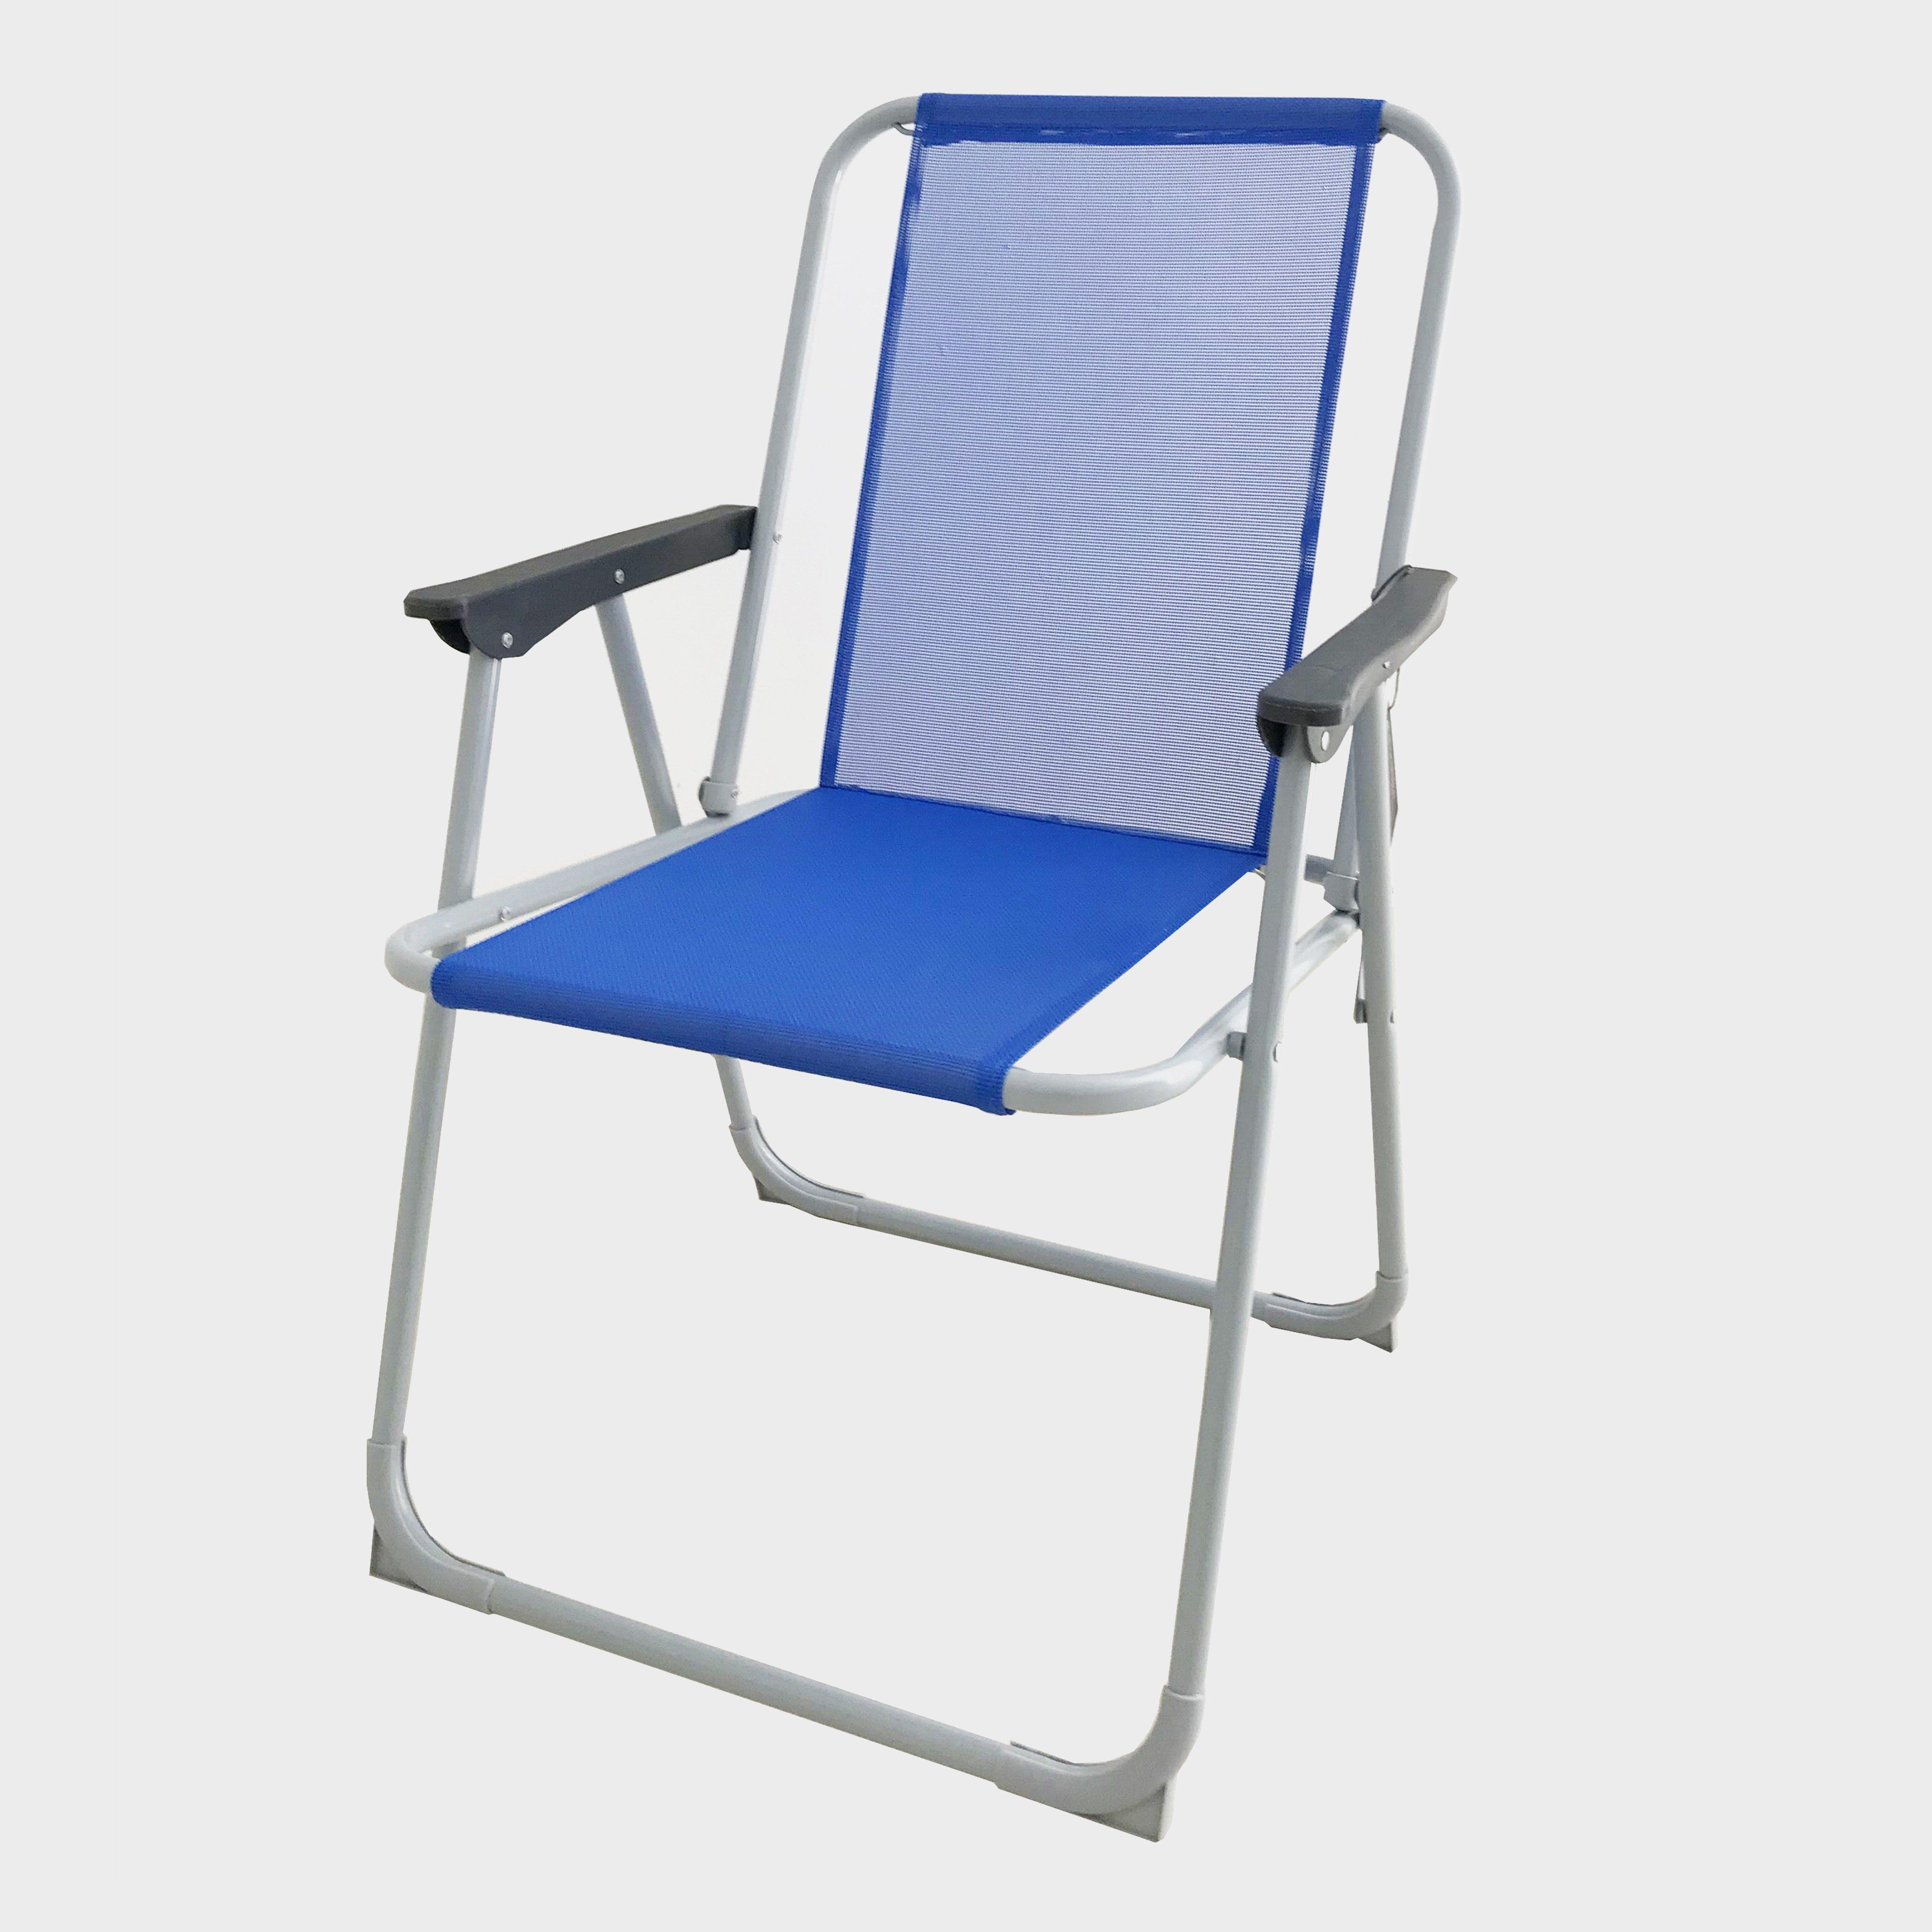 eurohike folding chair